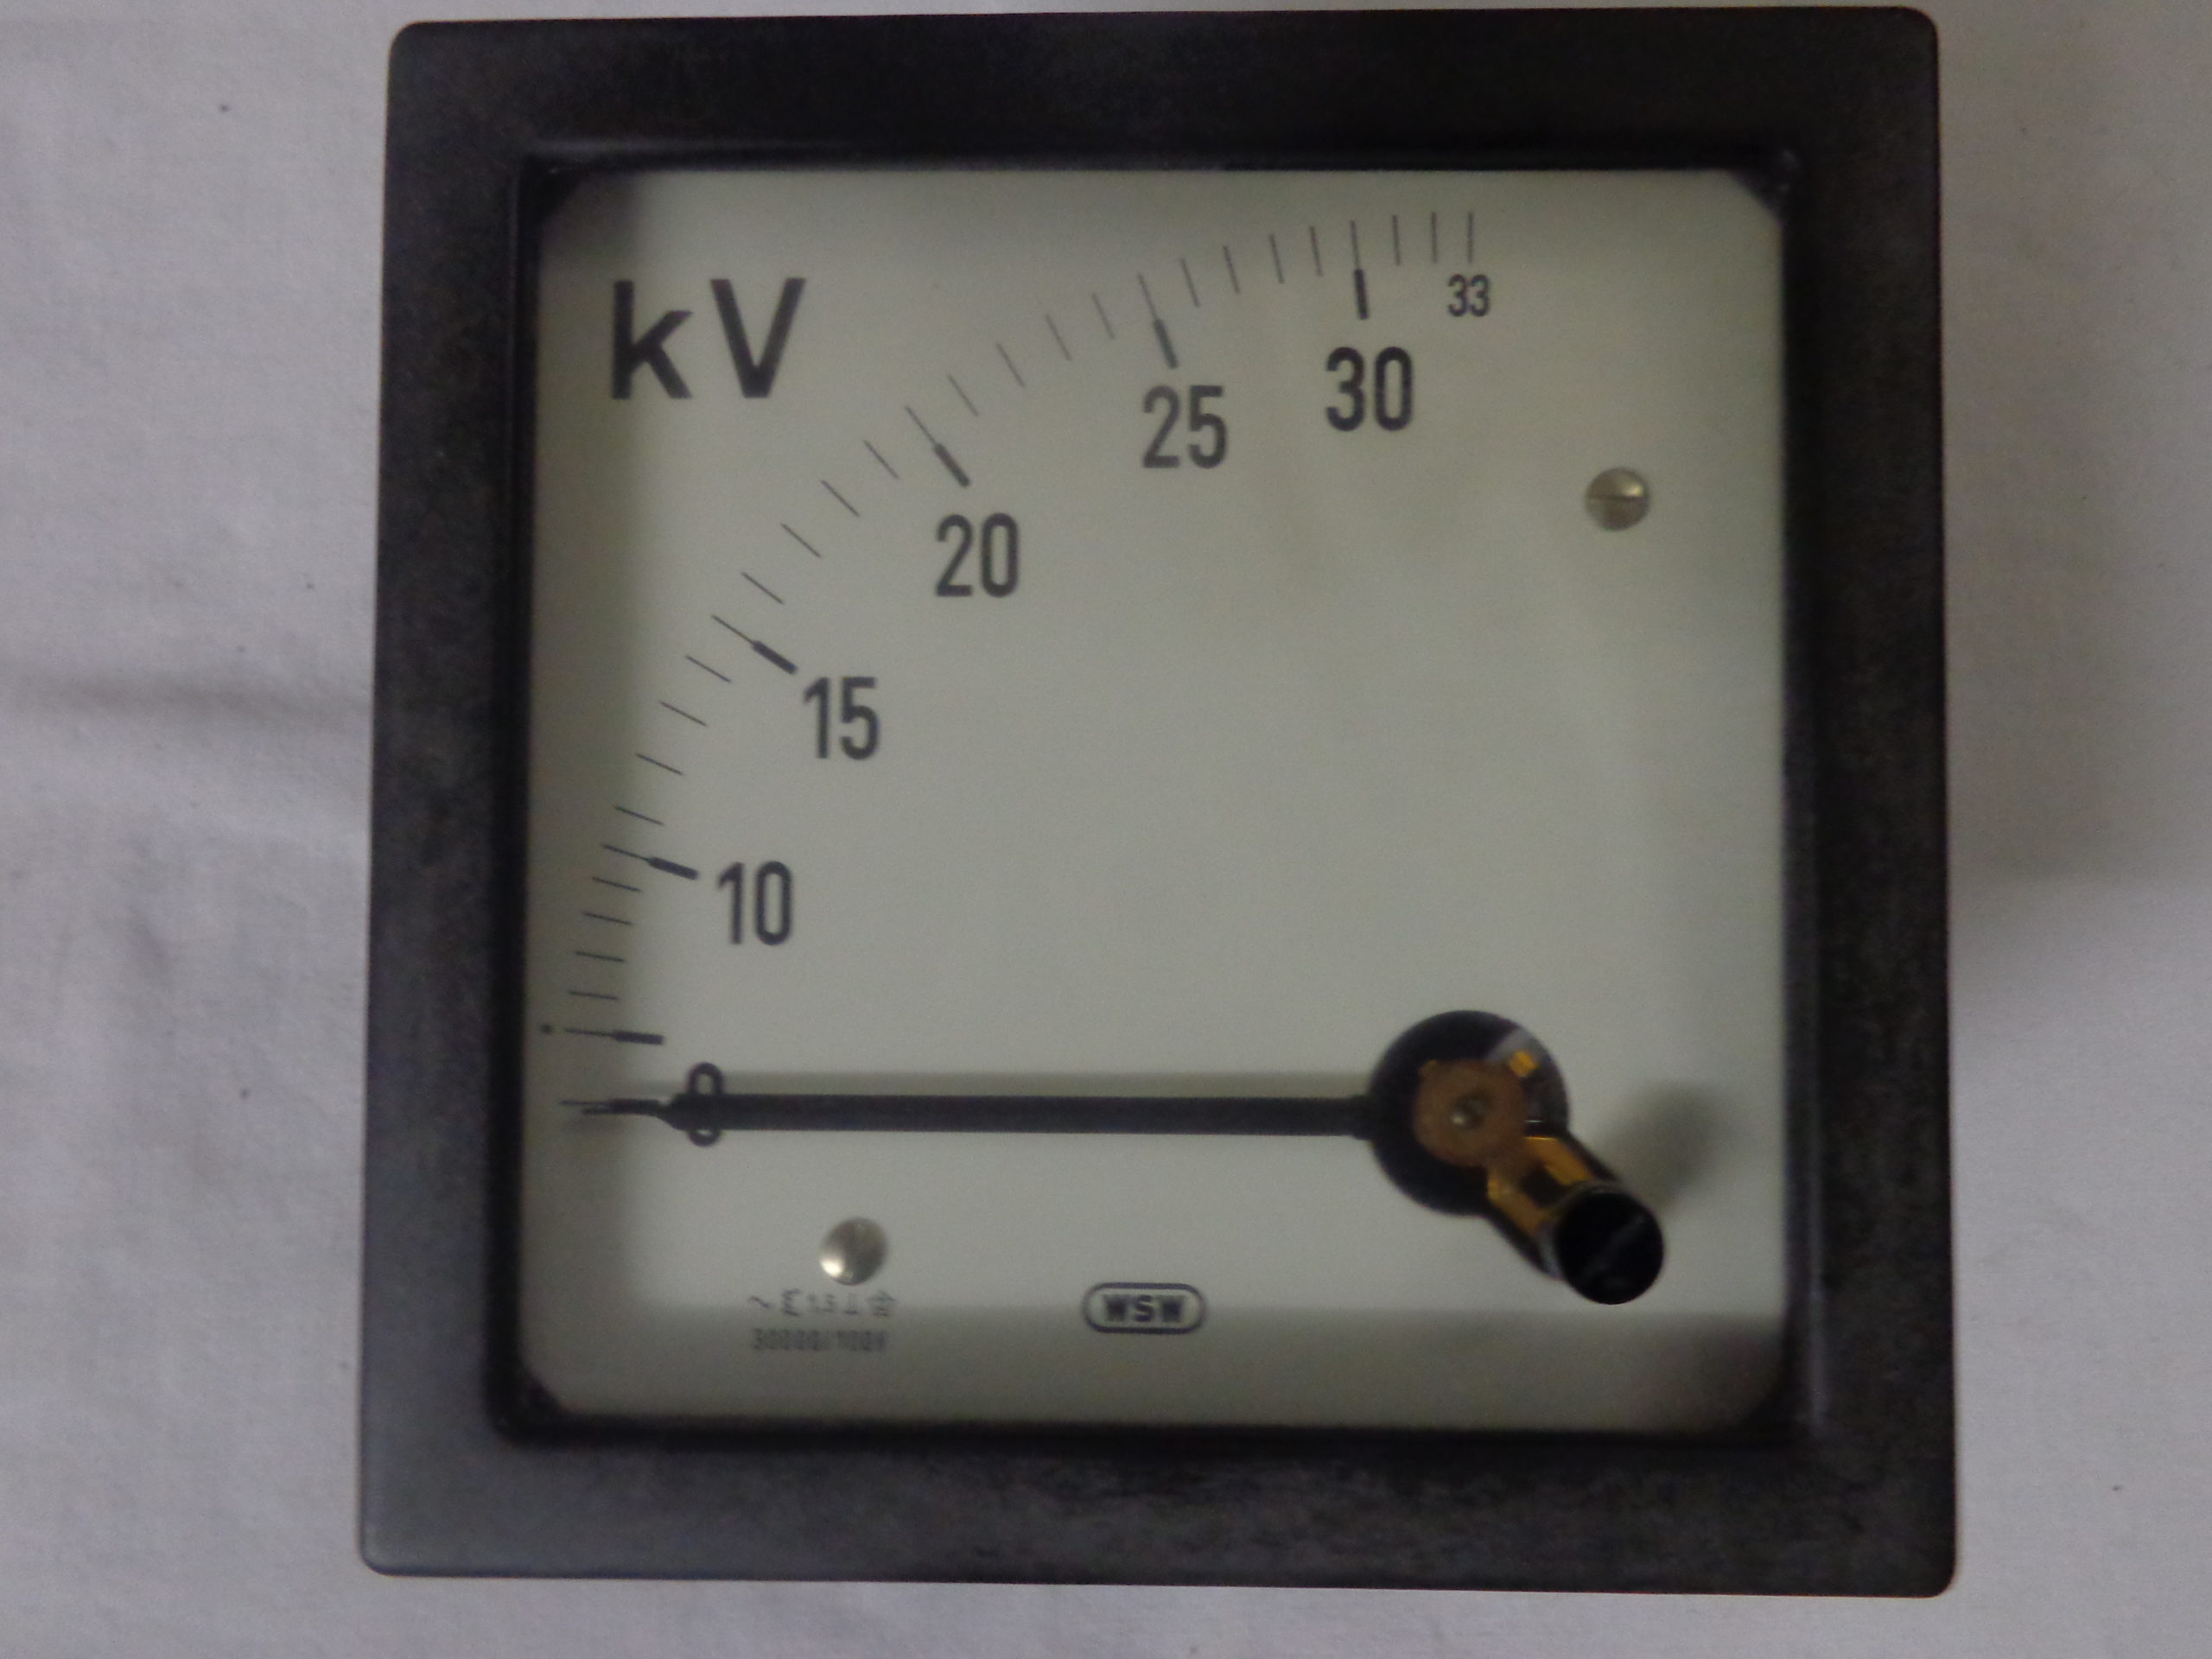 WSW Voltmeter 33 KV analog - Michl's Onlineshop OG